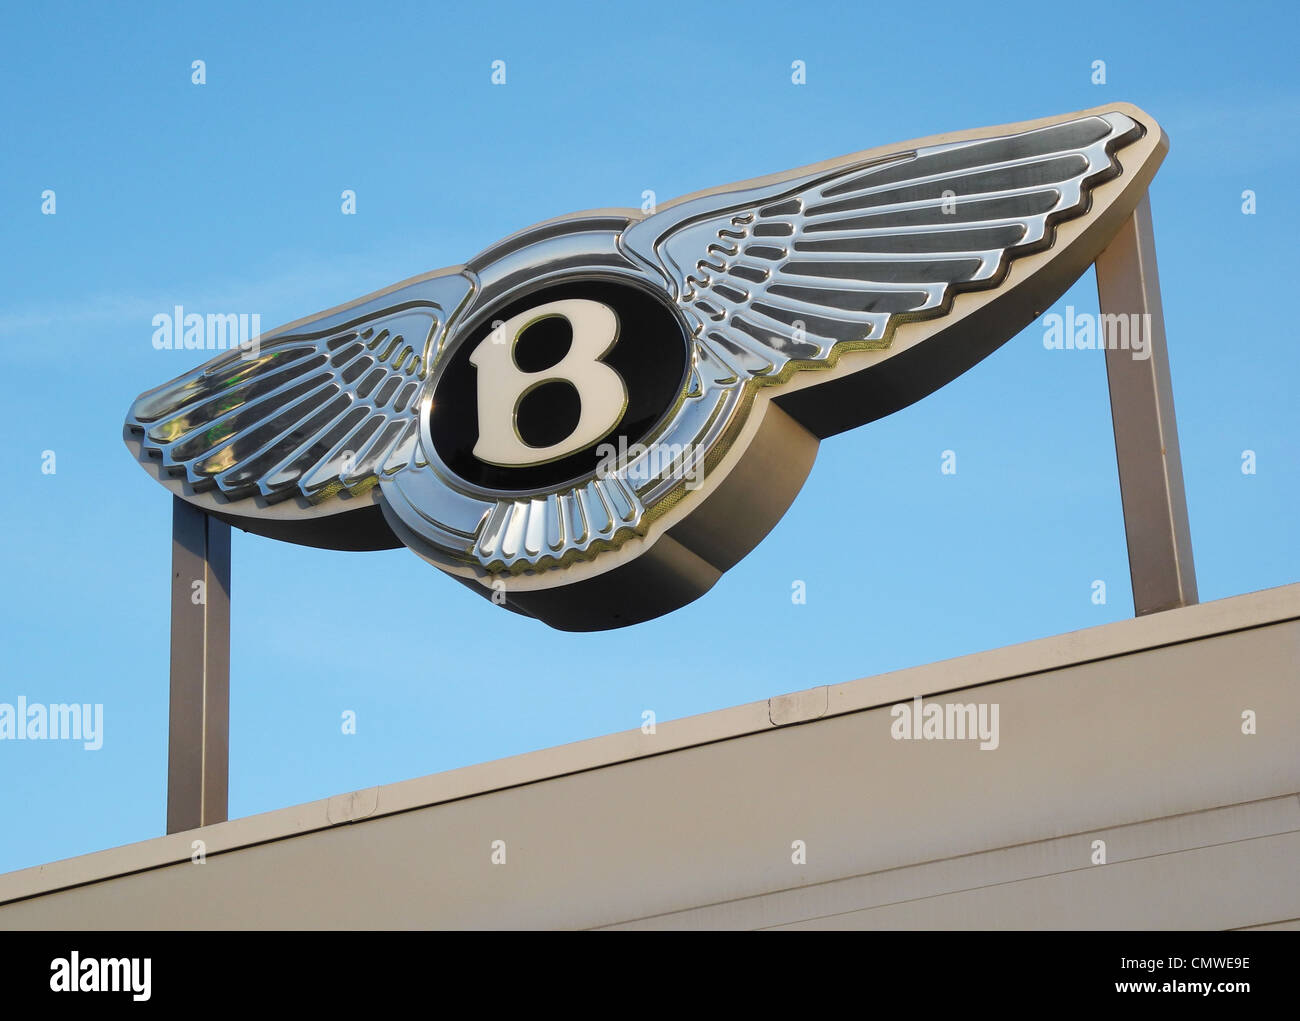 L'entreprise automobile Bentley marque sur un garage usage éditorial seulement photographié dans le cadre d'une vente de voiture, de la voie publique ce n'est pas un fac-similé de la reproduction à des fins d'auteur. Banque D'Images